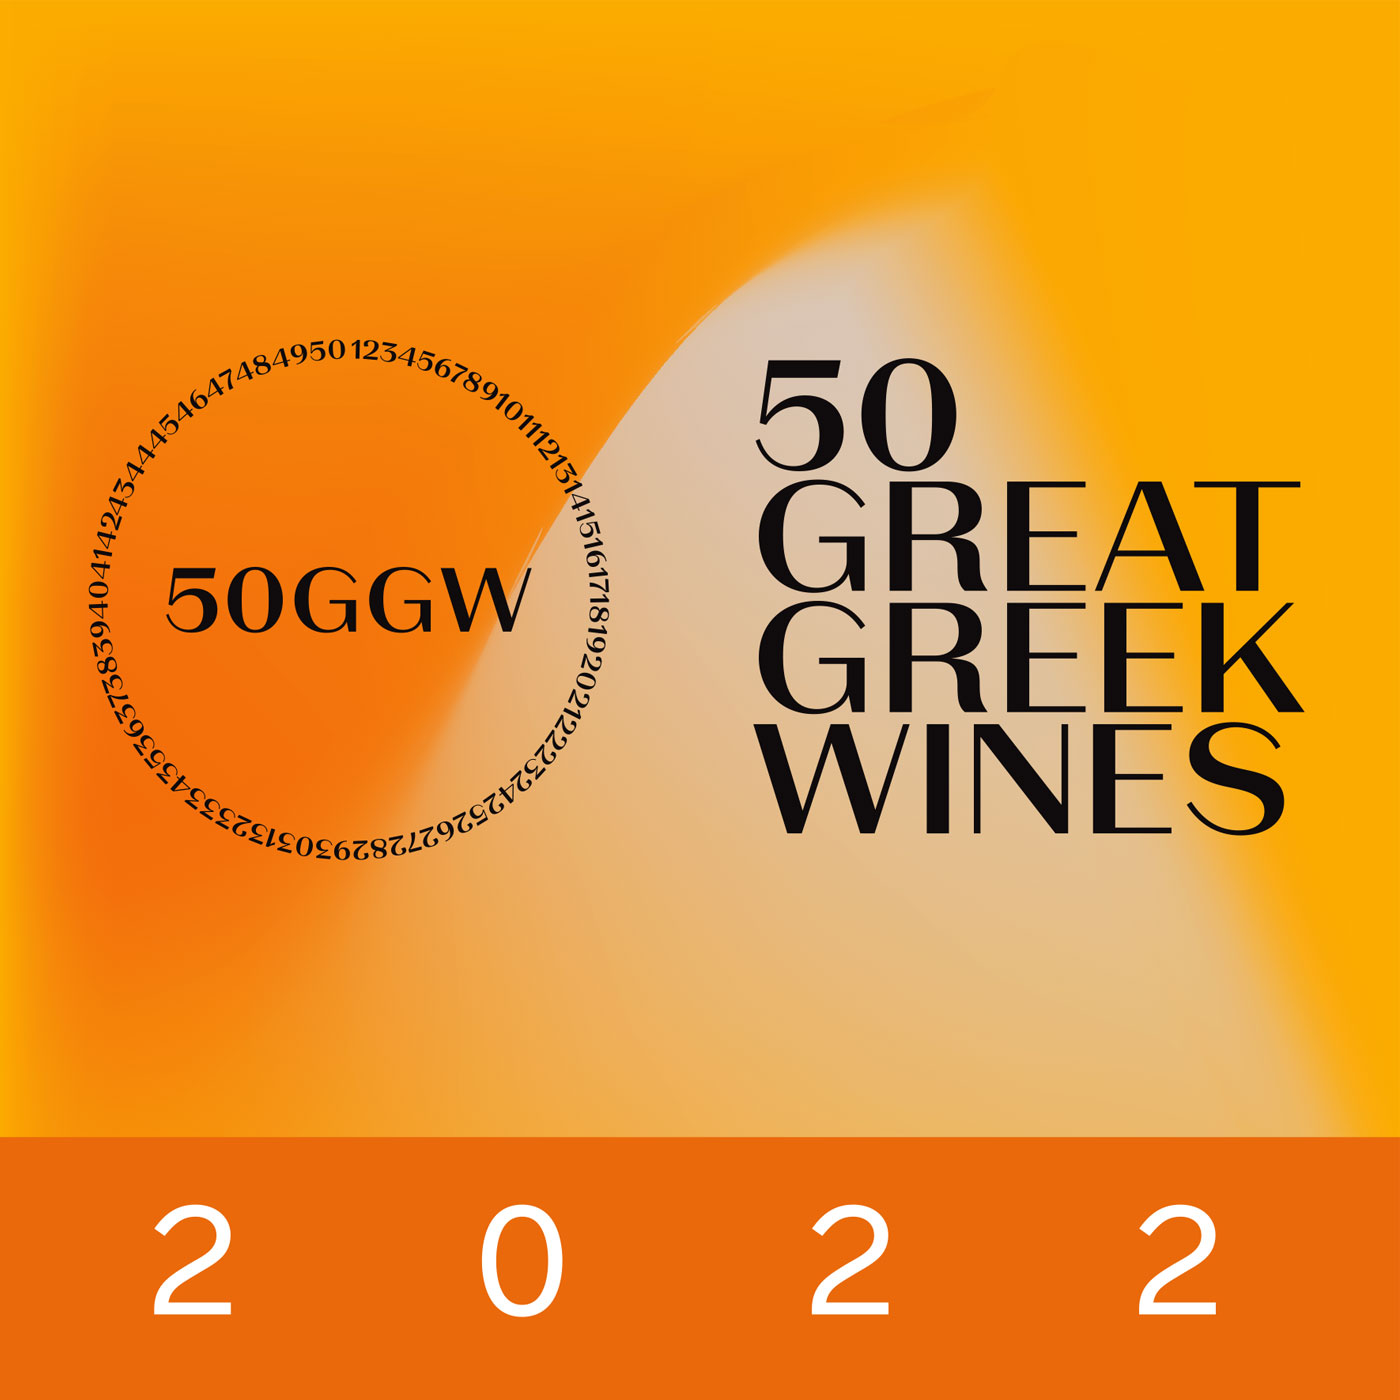 50 GREAT GREEK WINES